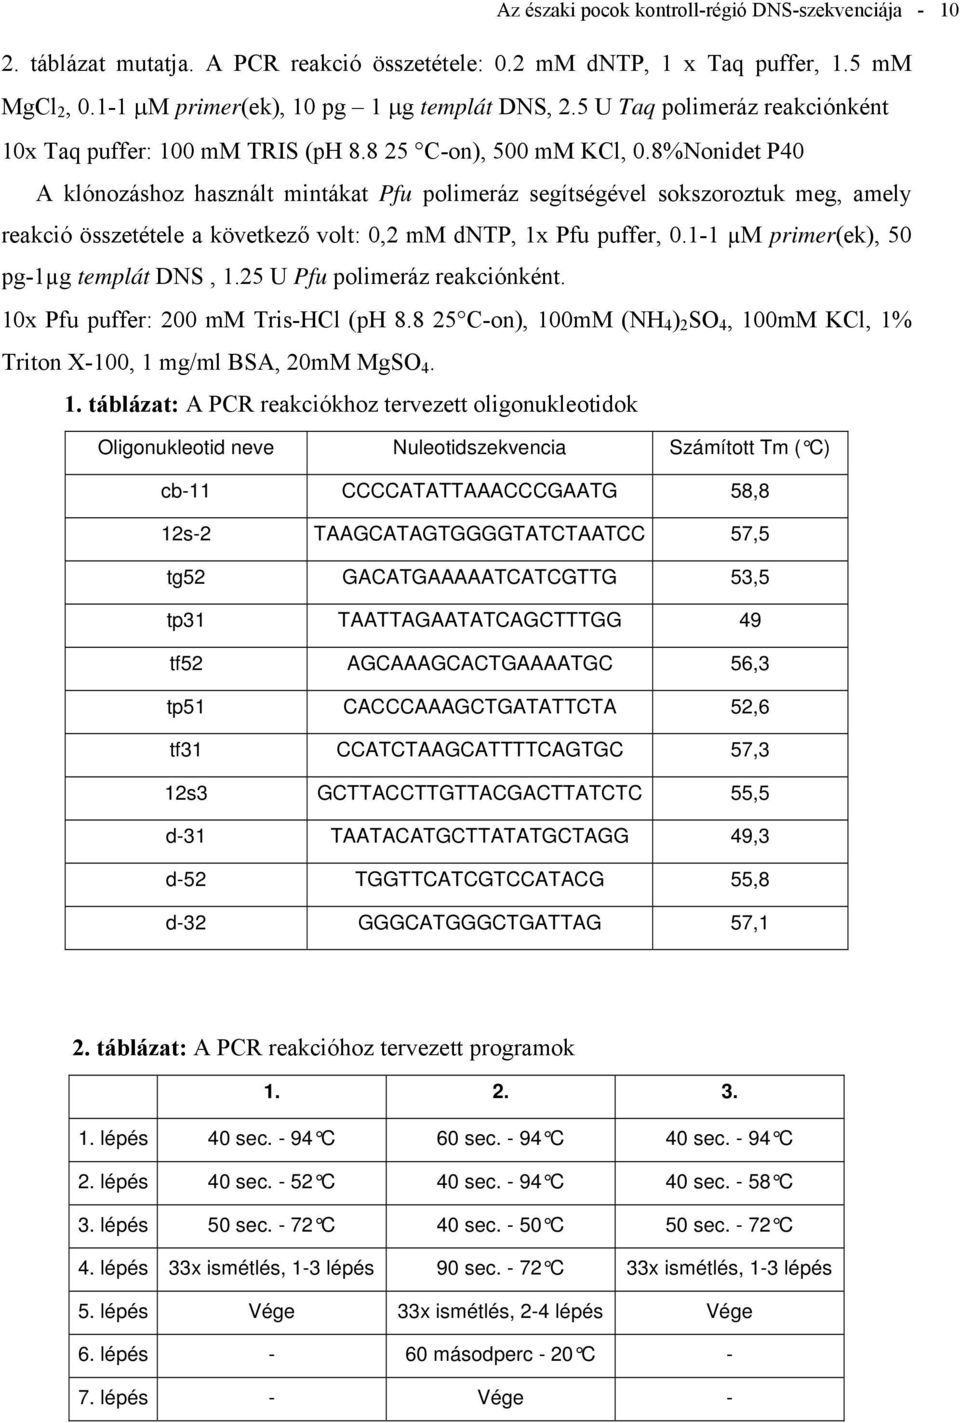 8%Nonidet P40 A klónozáshoz használt mintákat Pfu polimeráz segítségével sokszoroztuk meg, amely reakció összetétele a következő volt: 0,2 mm dntp, 1x Pfu puffer, 0.